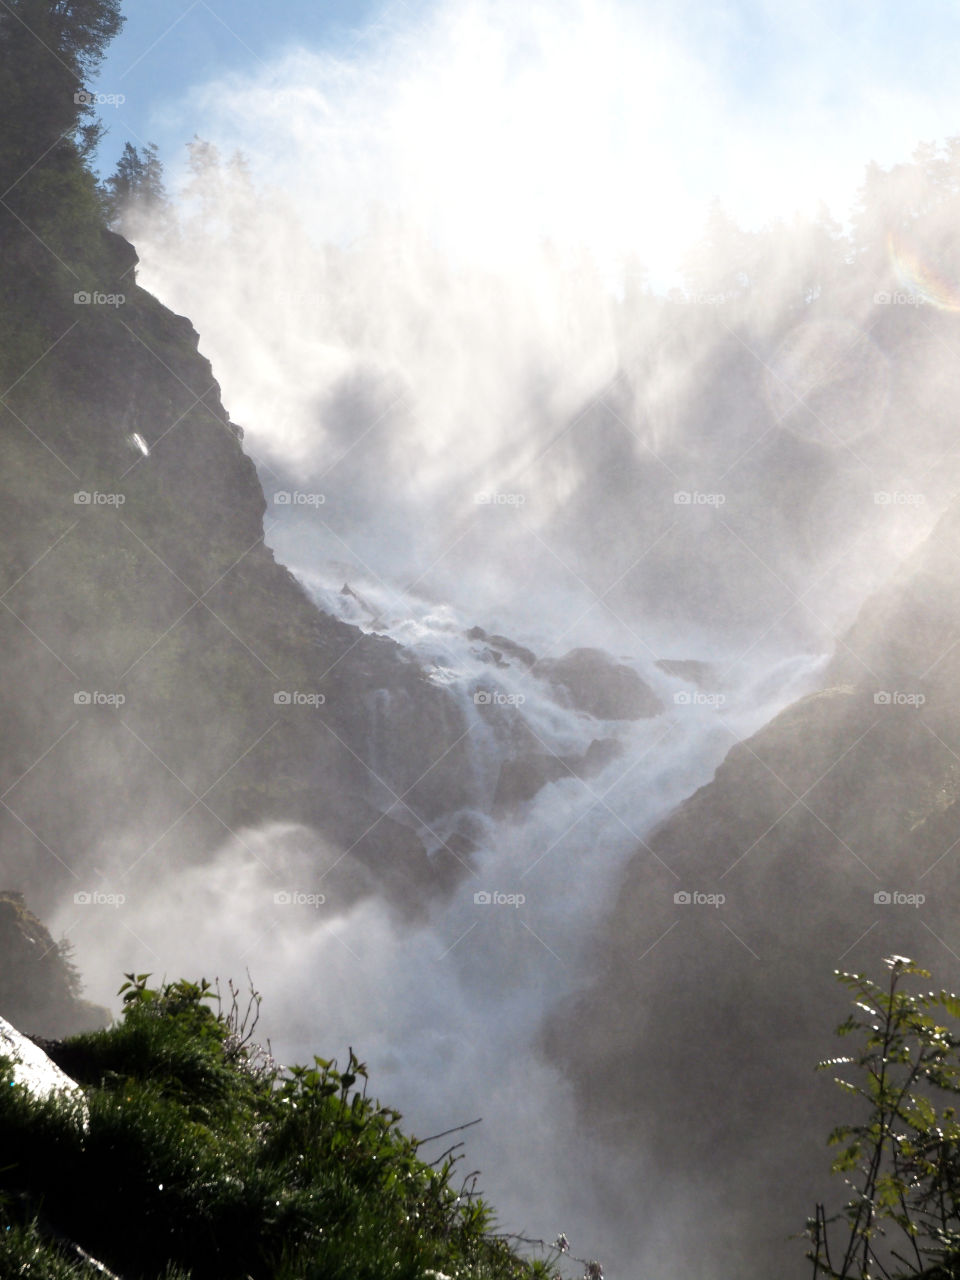 Waterfall in Norway, near Odda